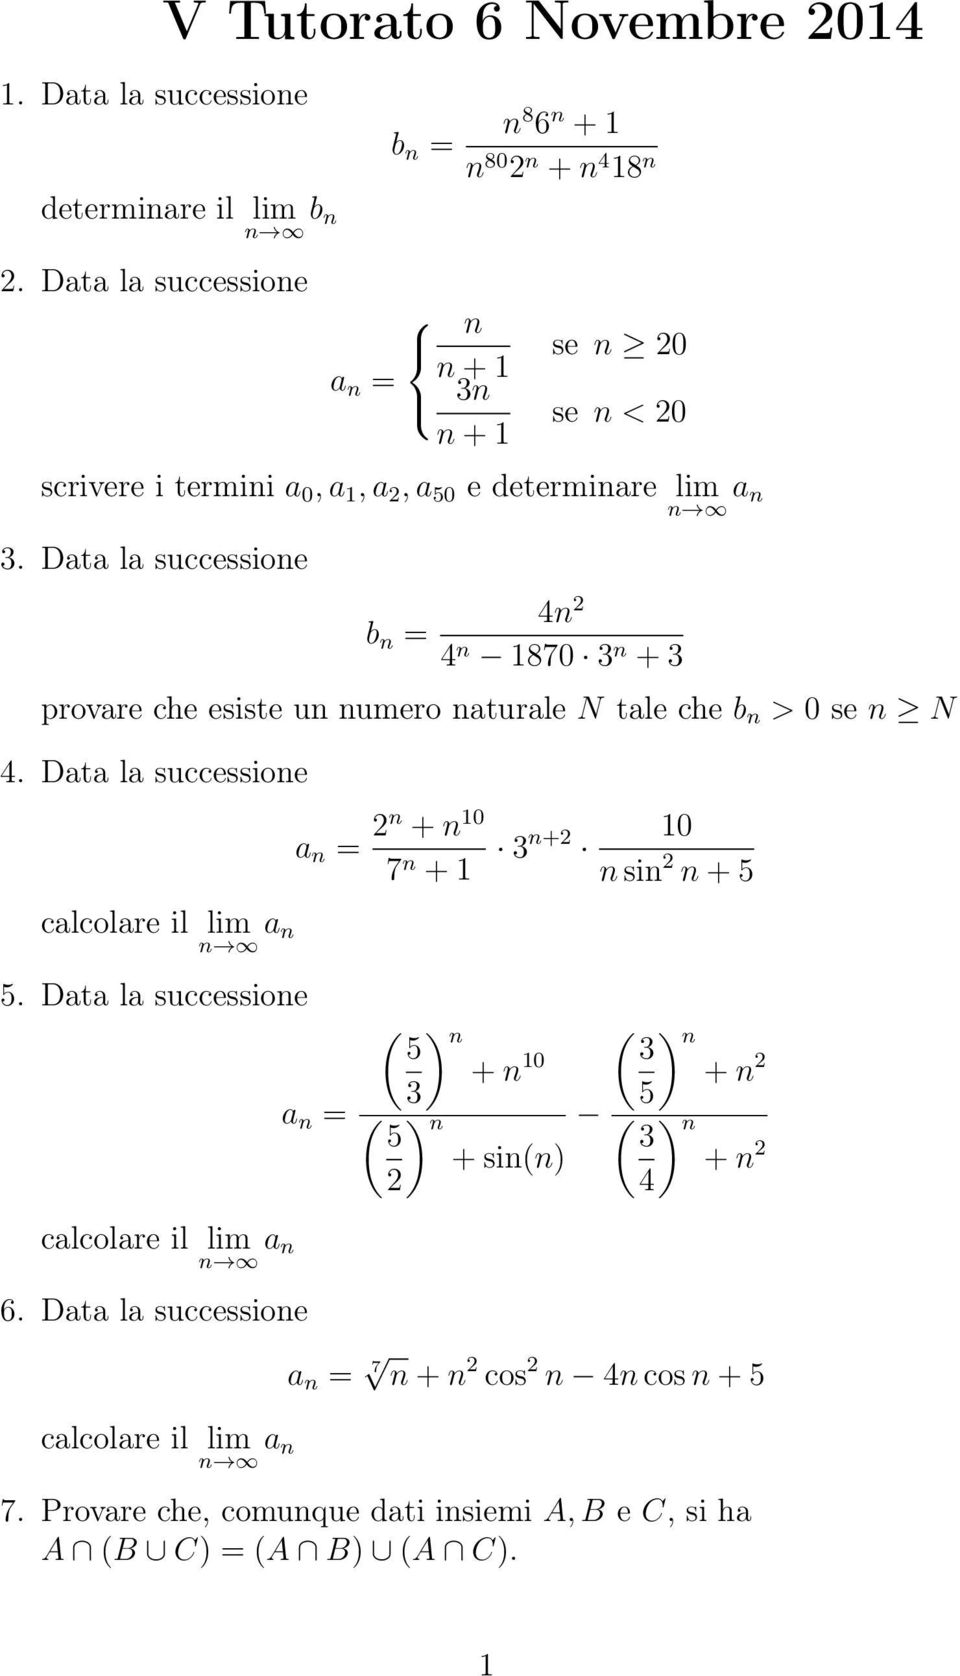 Data la successioe b = 1870 + provare che esiste u umero aturale N tale che b > 0 se N. Data la successioe calcolare il lim a.